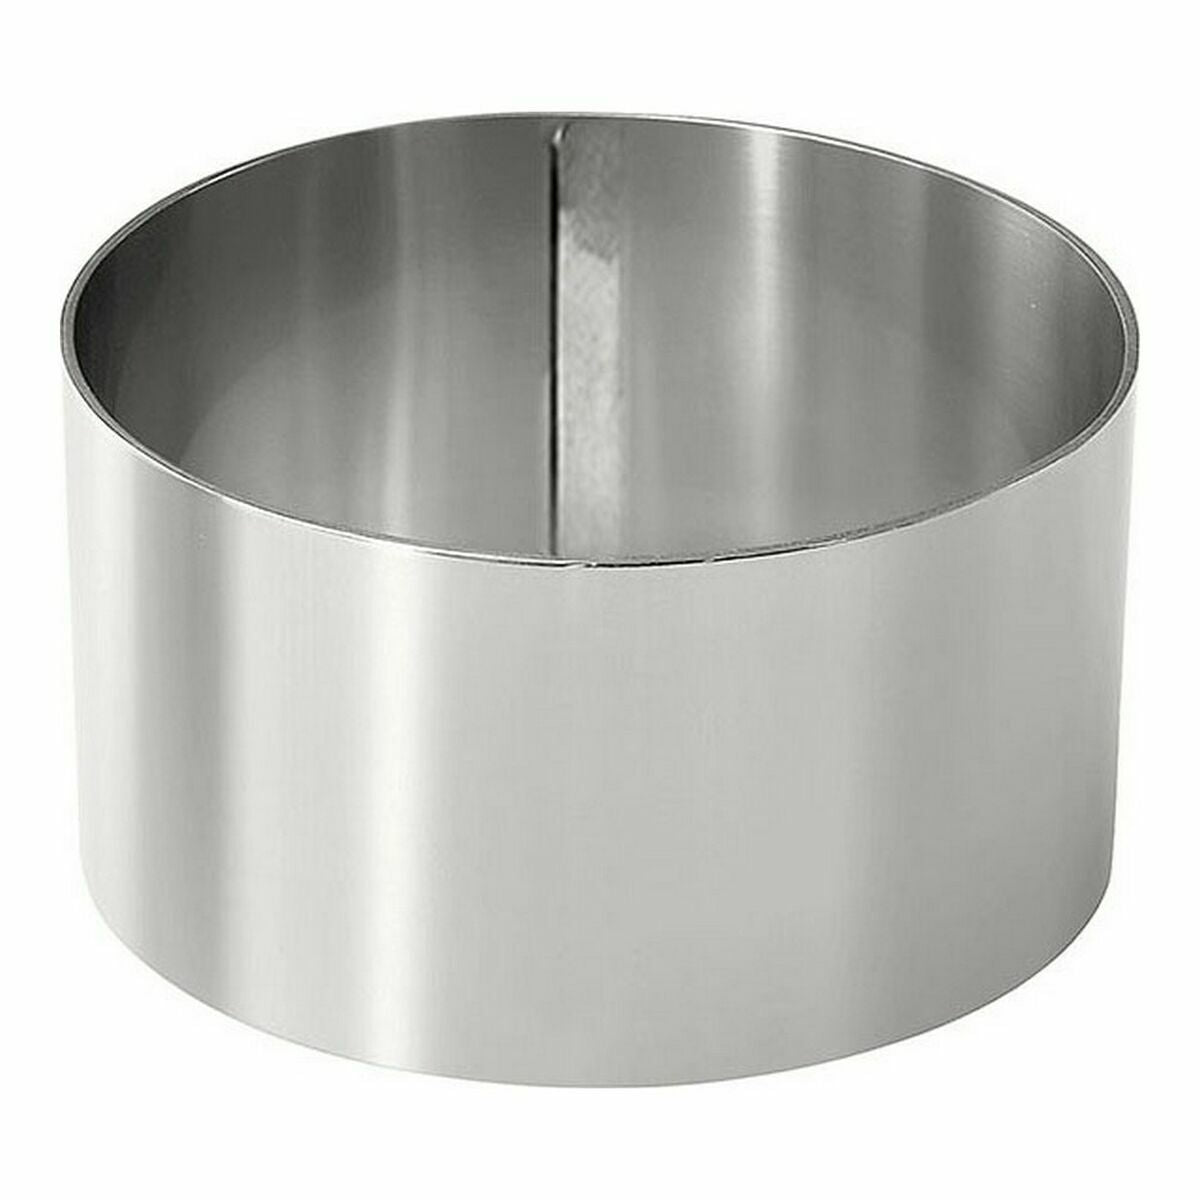 Platingmal Roestvrij staal Zilverkleurig 8 cm 0,8 mm (36 Stuks) (8 x 4,5 cm)